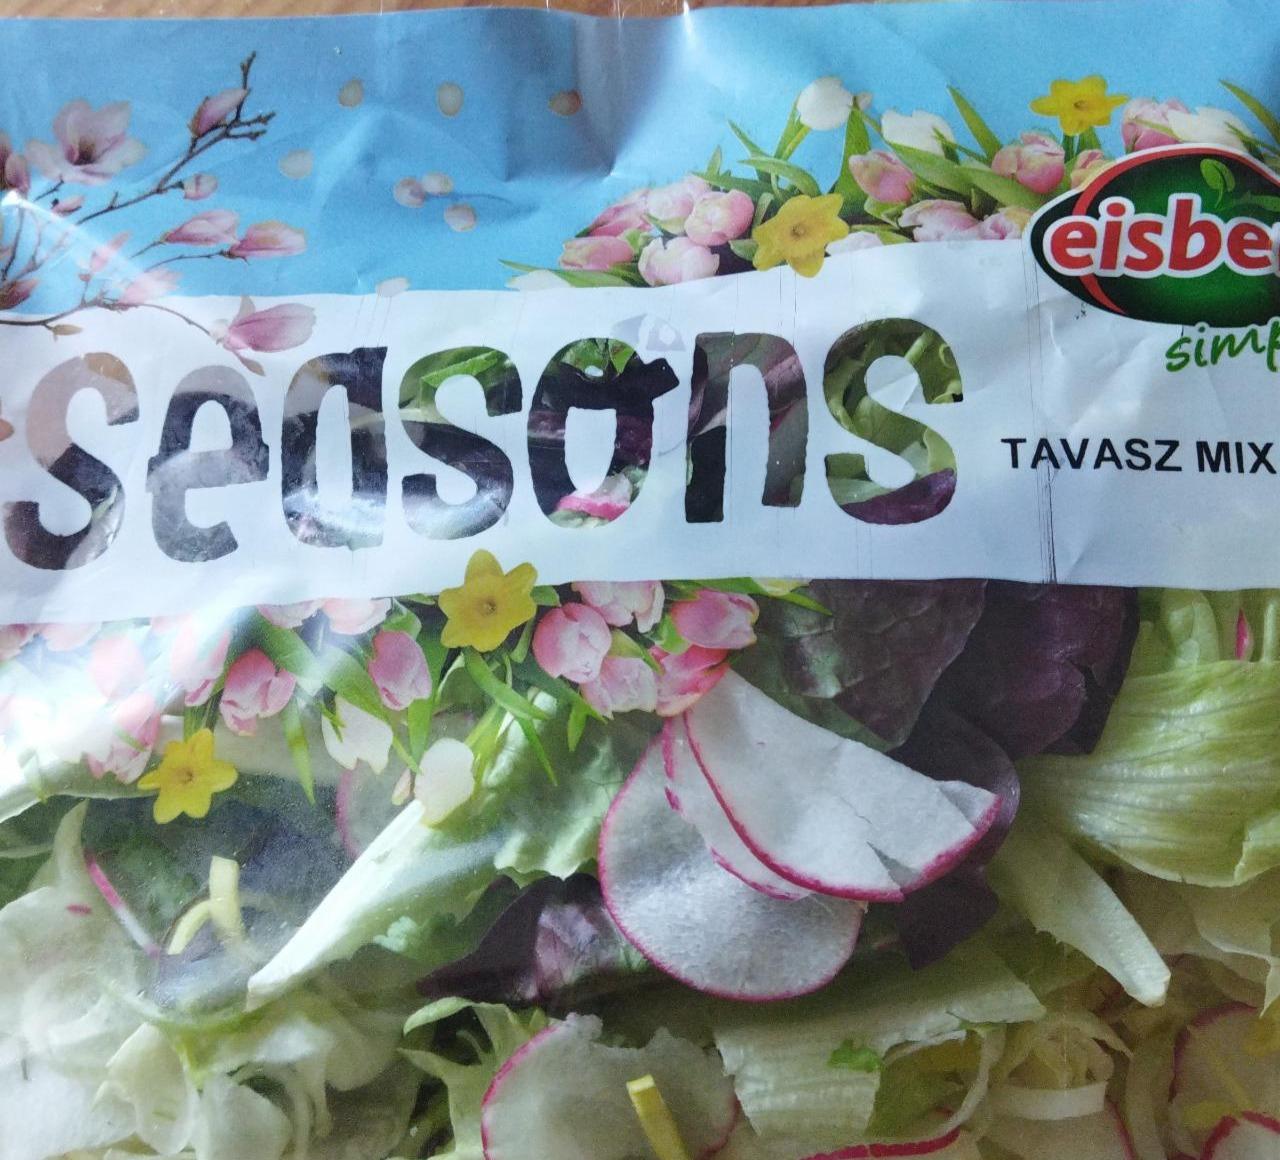 Fotografie - Seasons tavasz mix Eisberg